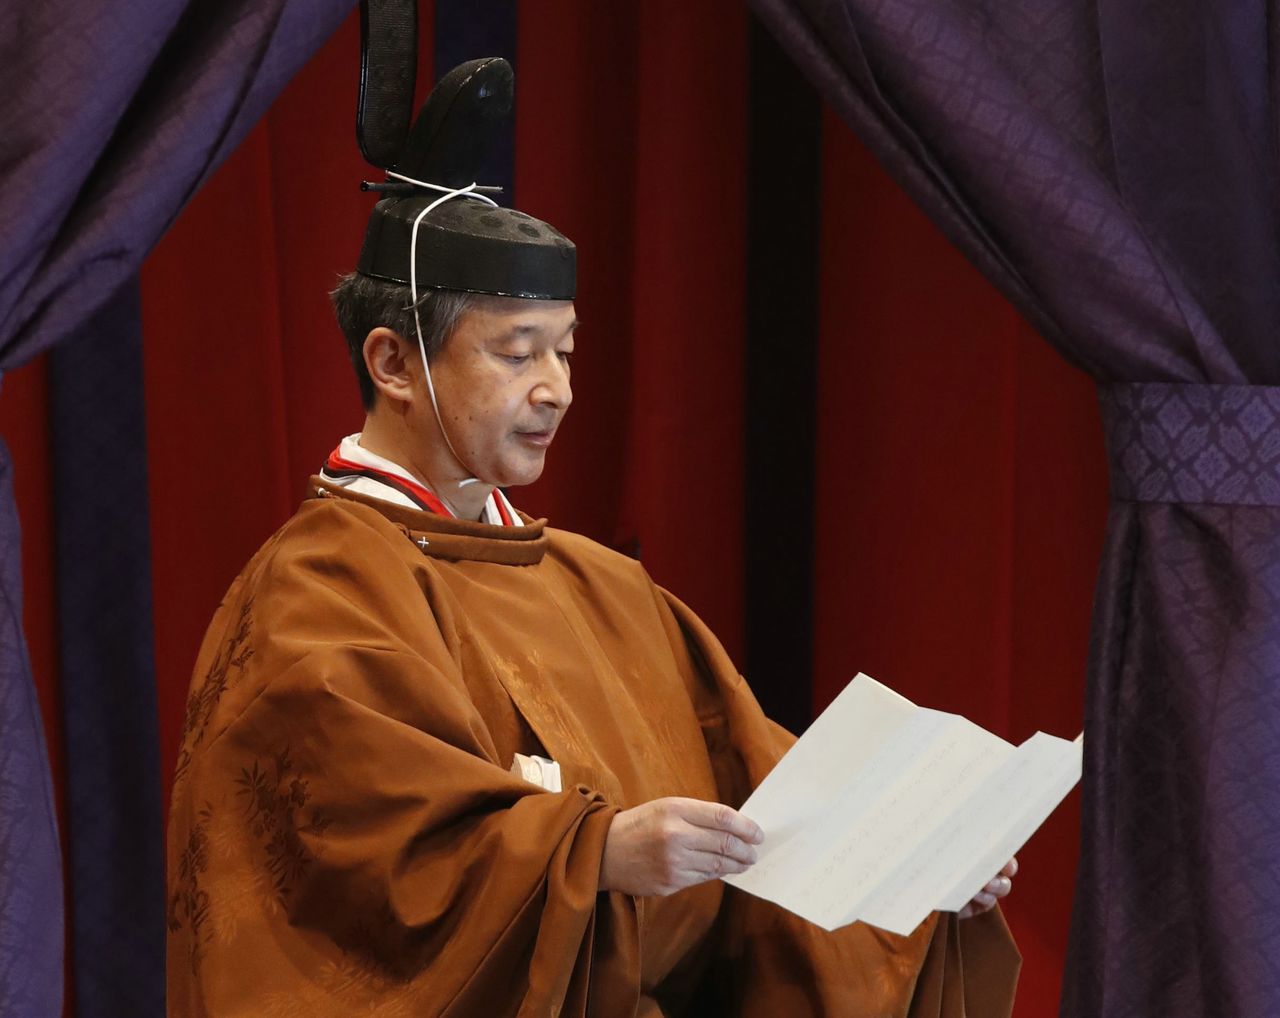 Император Нарухито зачитывает тронную речь на церемонии восшествия на престол Сокуирэй сэйдэн-но ги в Токио 22 октября 2019 г. (© Jiji)